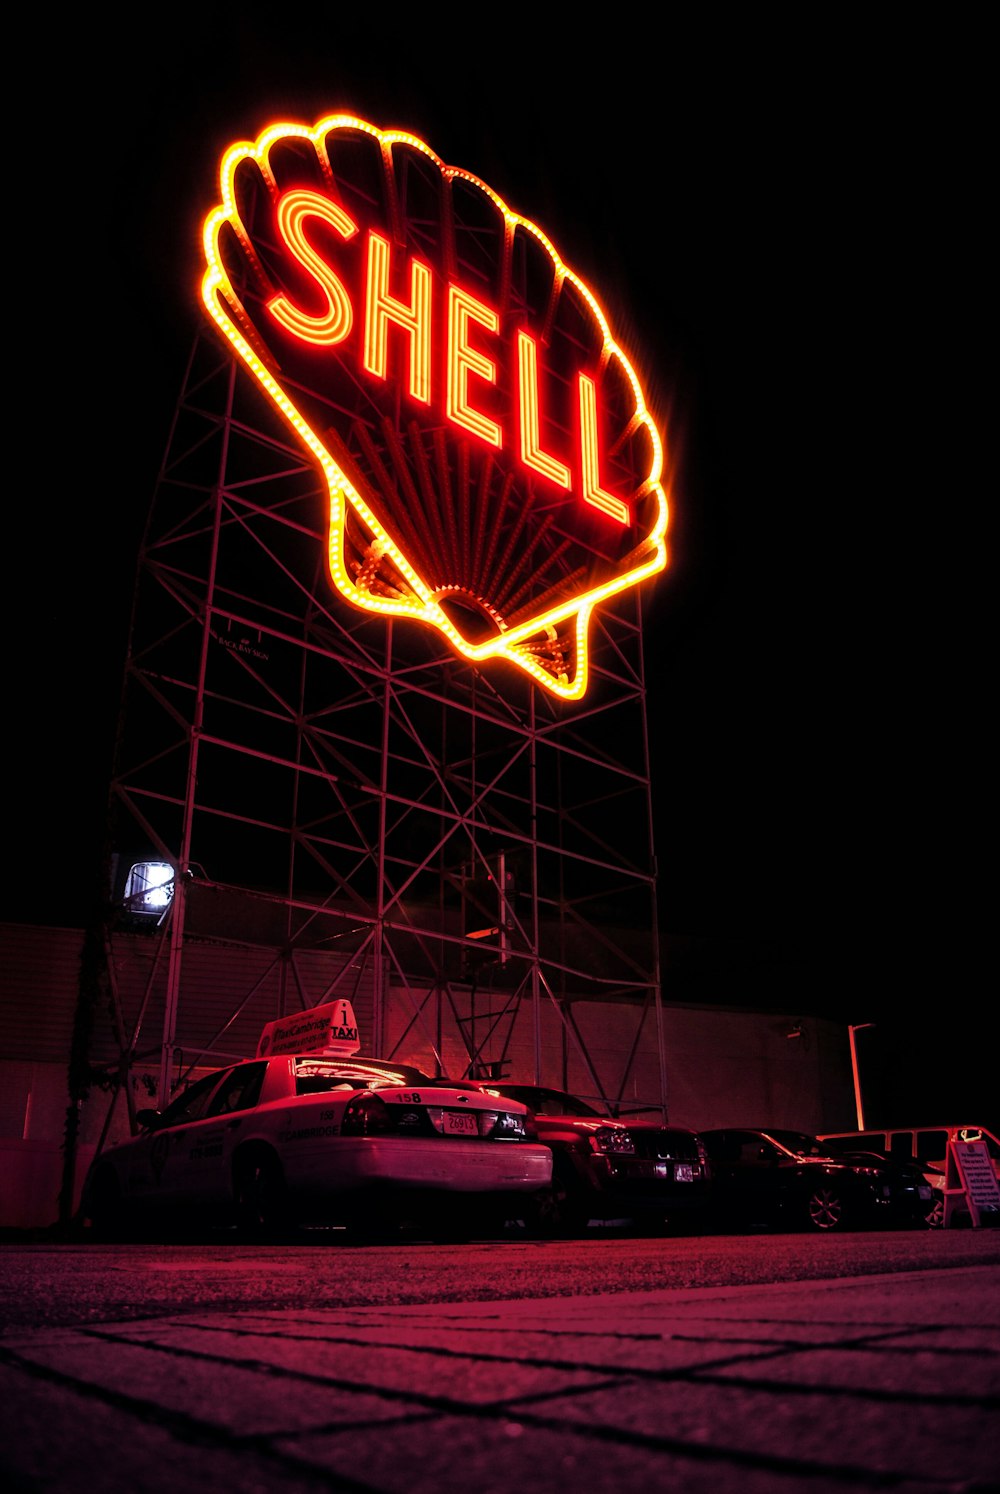 Shell LED signage